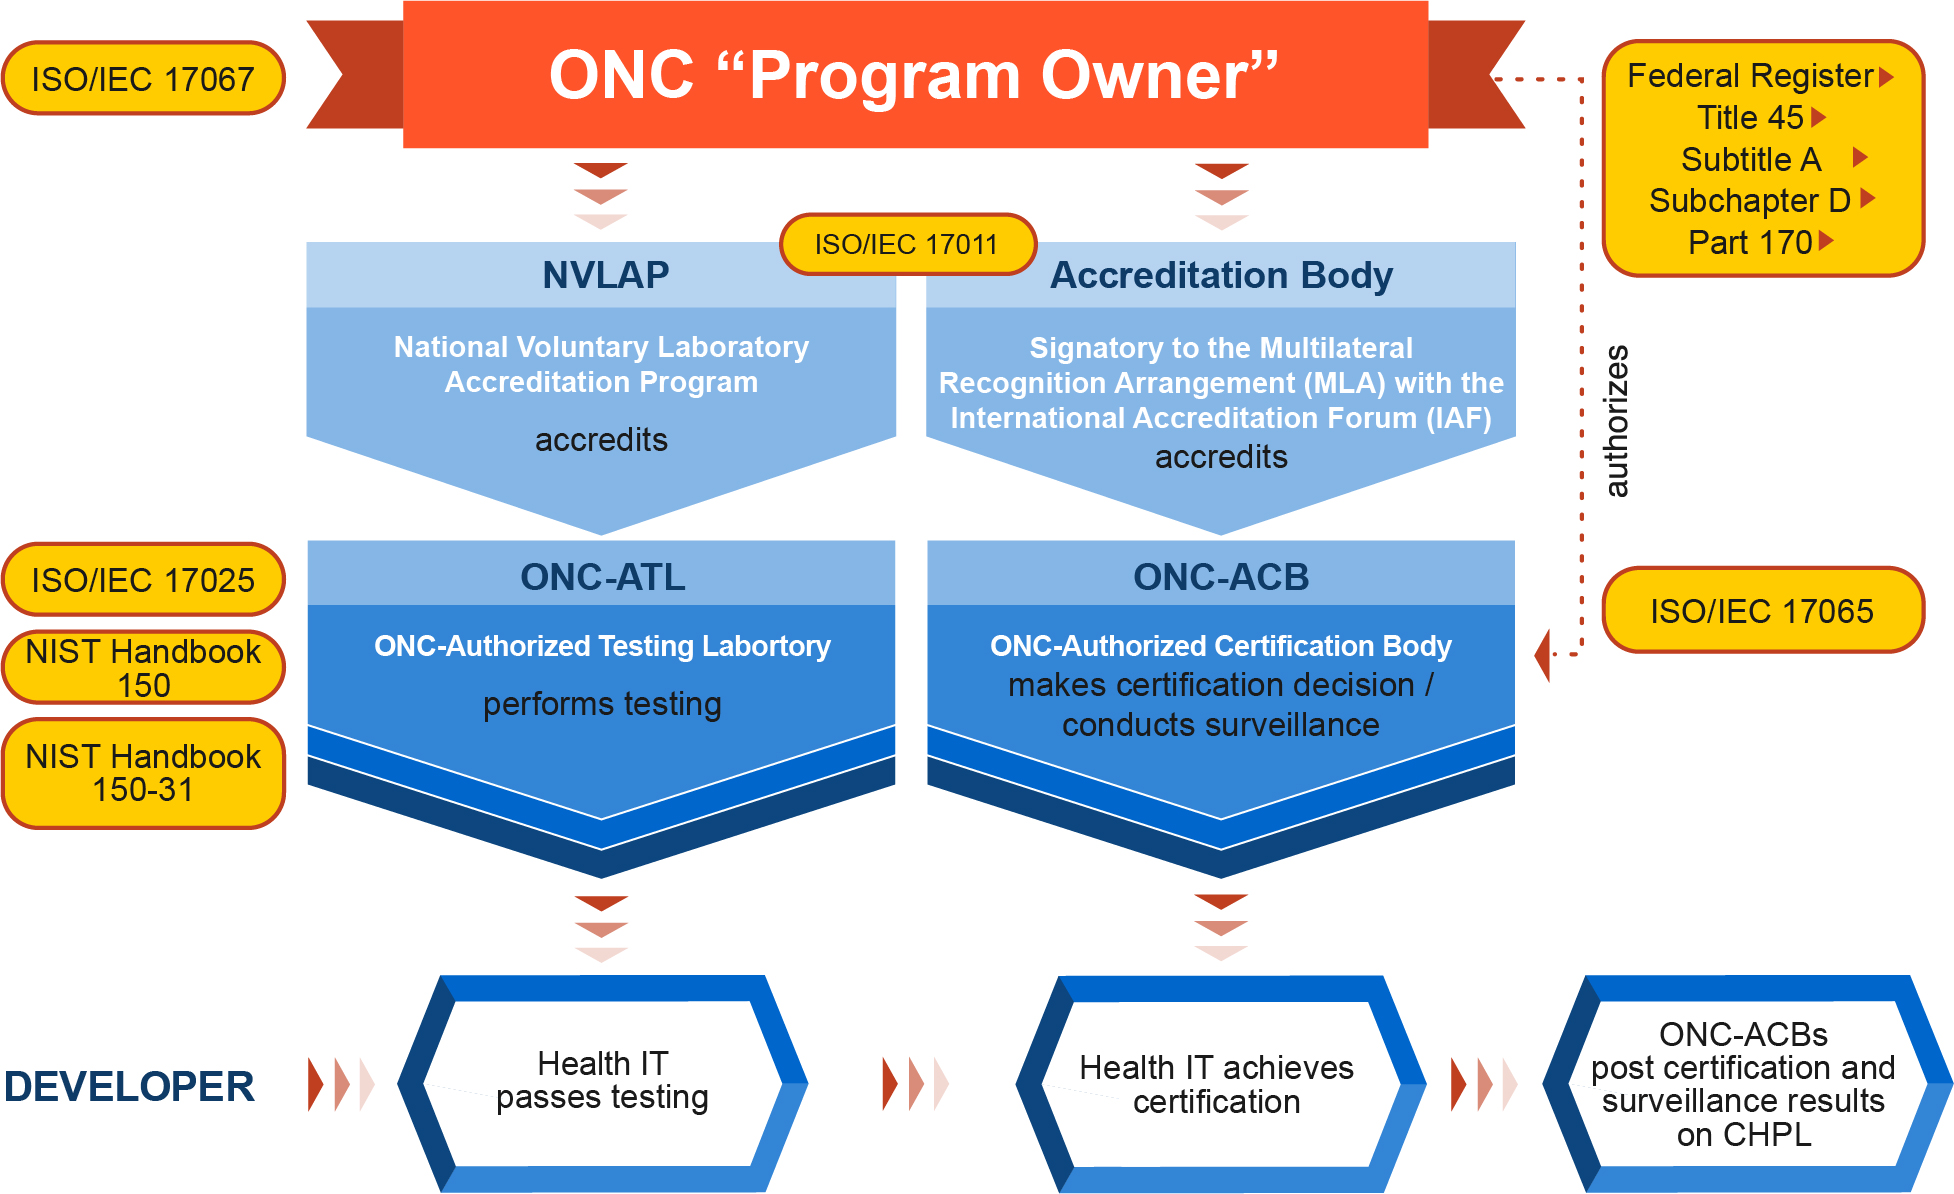 ONC "Program Owner"